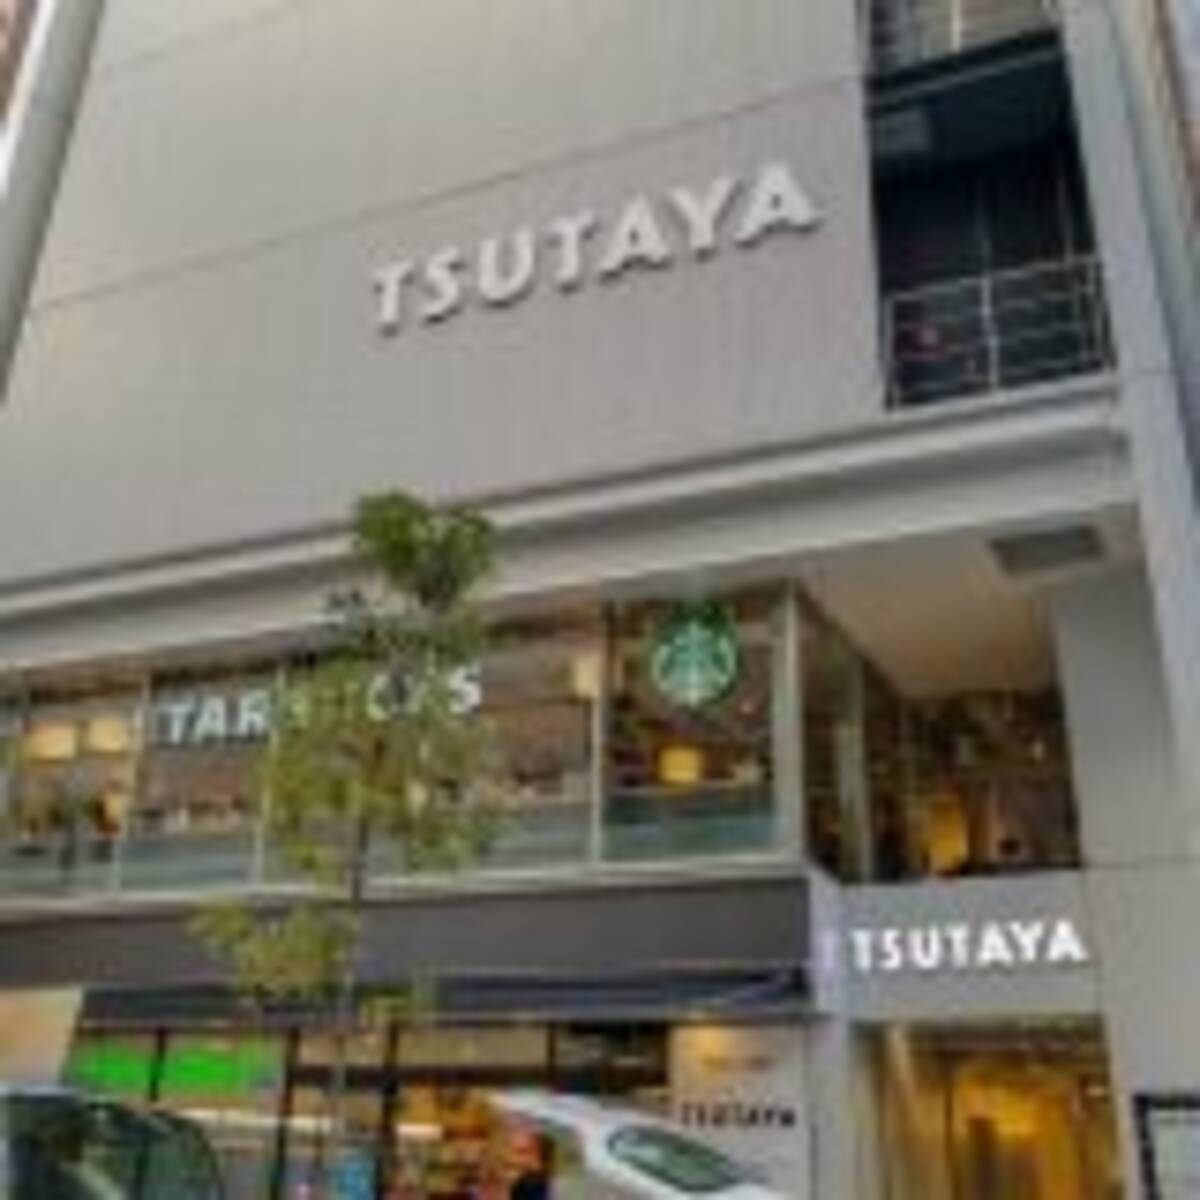 郊外から東京都心まで 閉店ラッシュの Tsutaya レンタル実店舗に未来はある 18年2月24日 エキサイトニュース